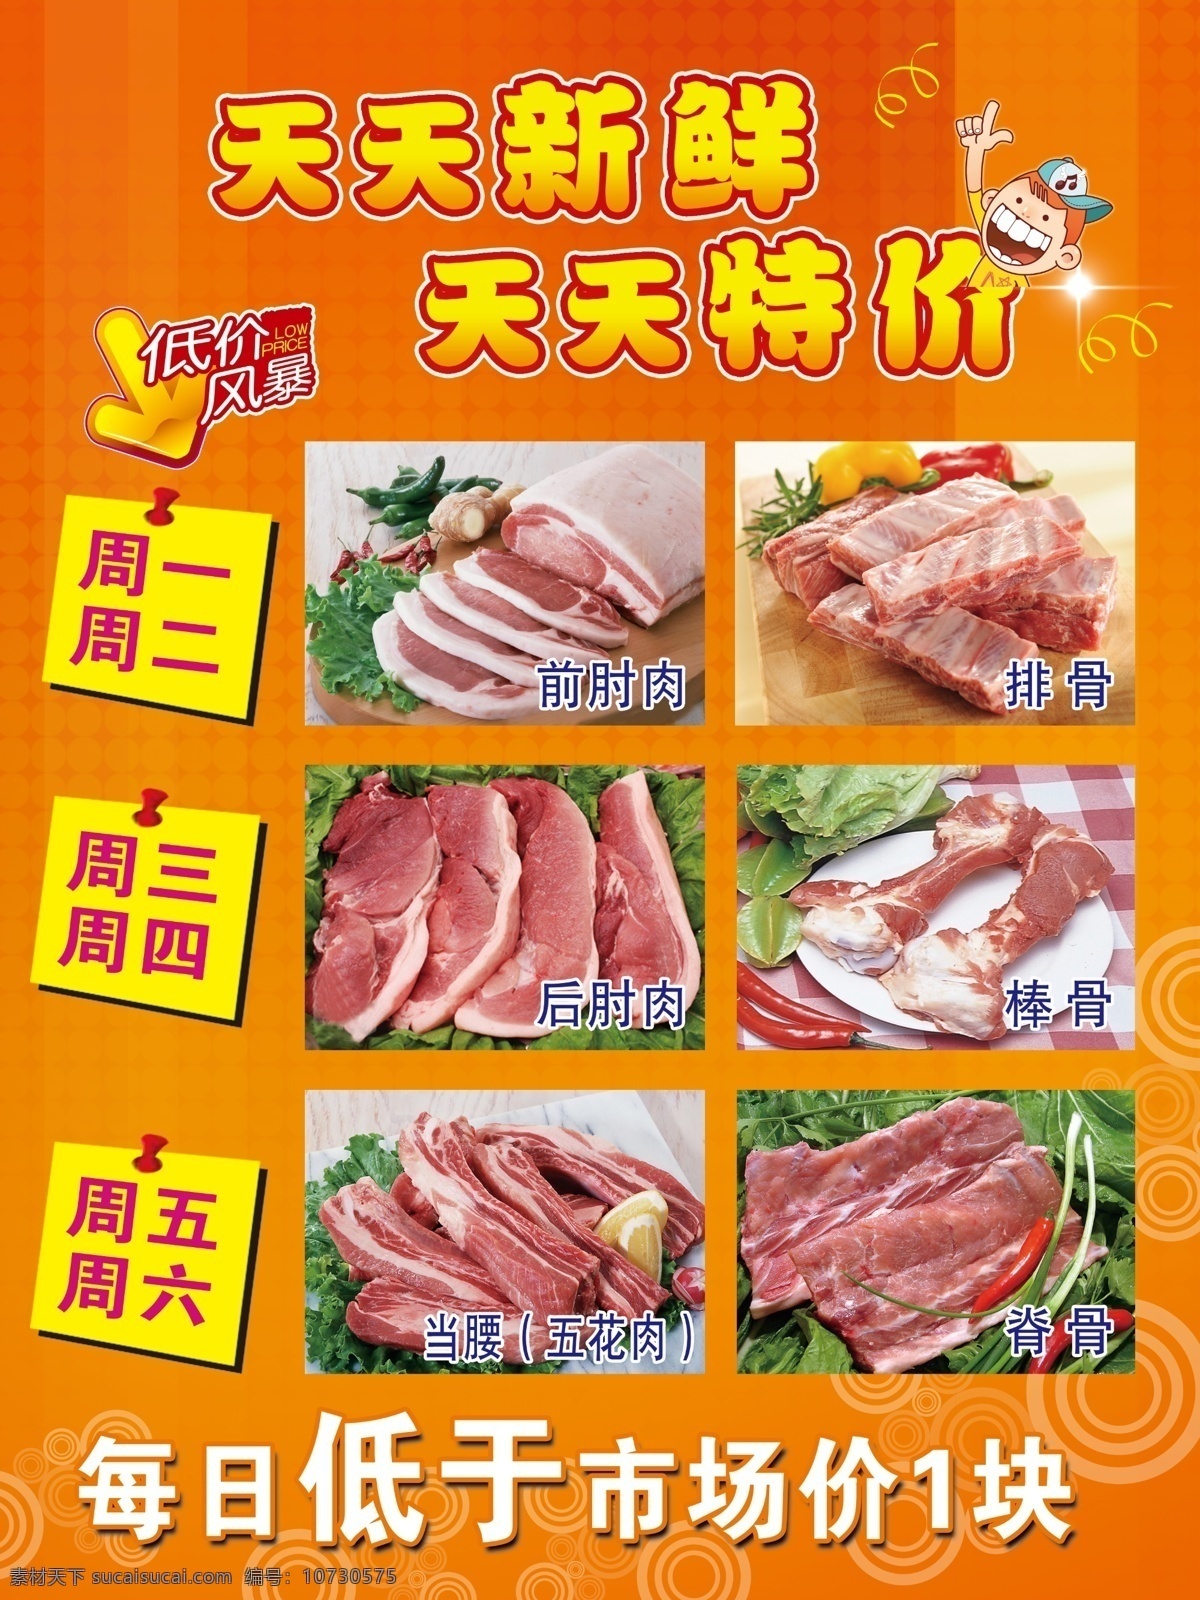 超市宣传海报 超市宣传 天天新鲜 天天特价 各类猪肉 橙色